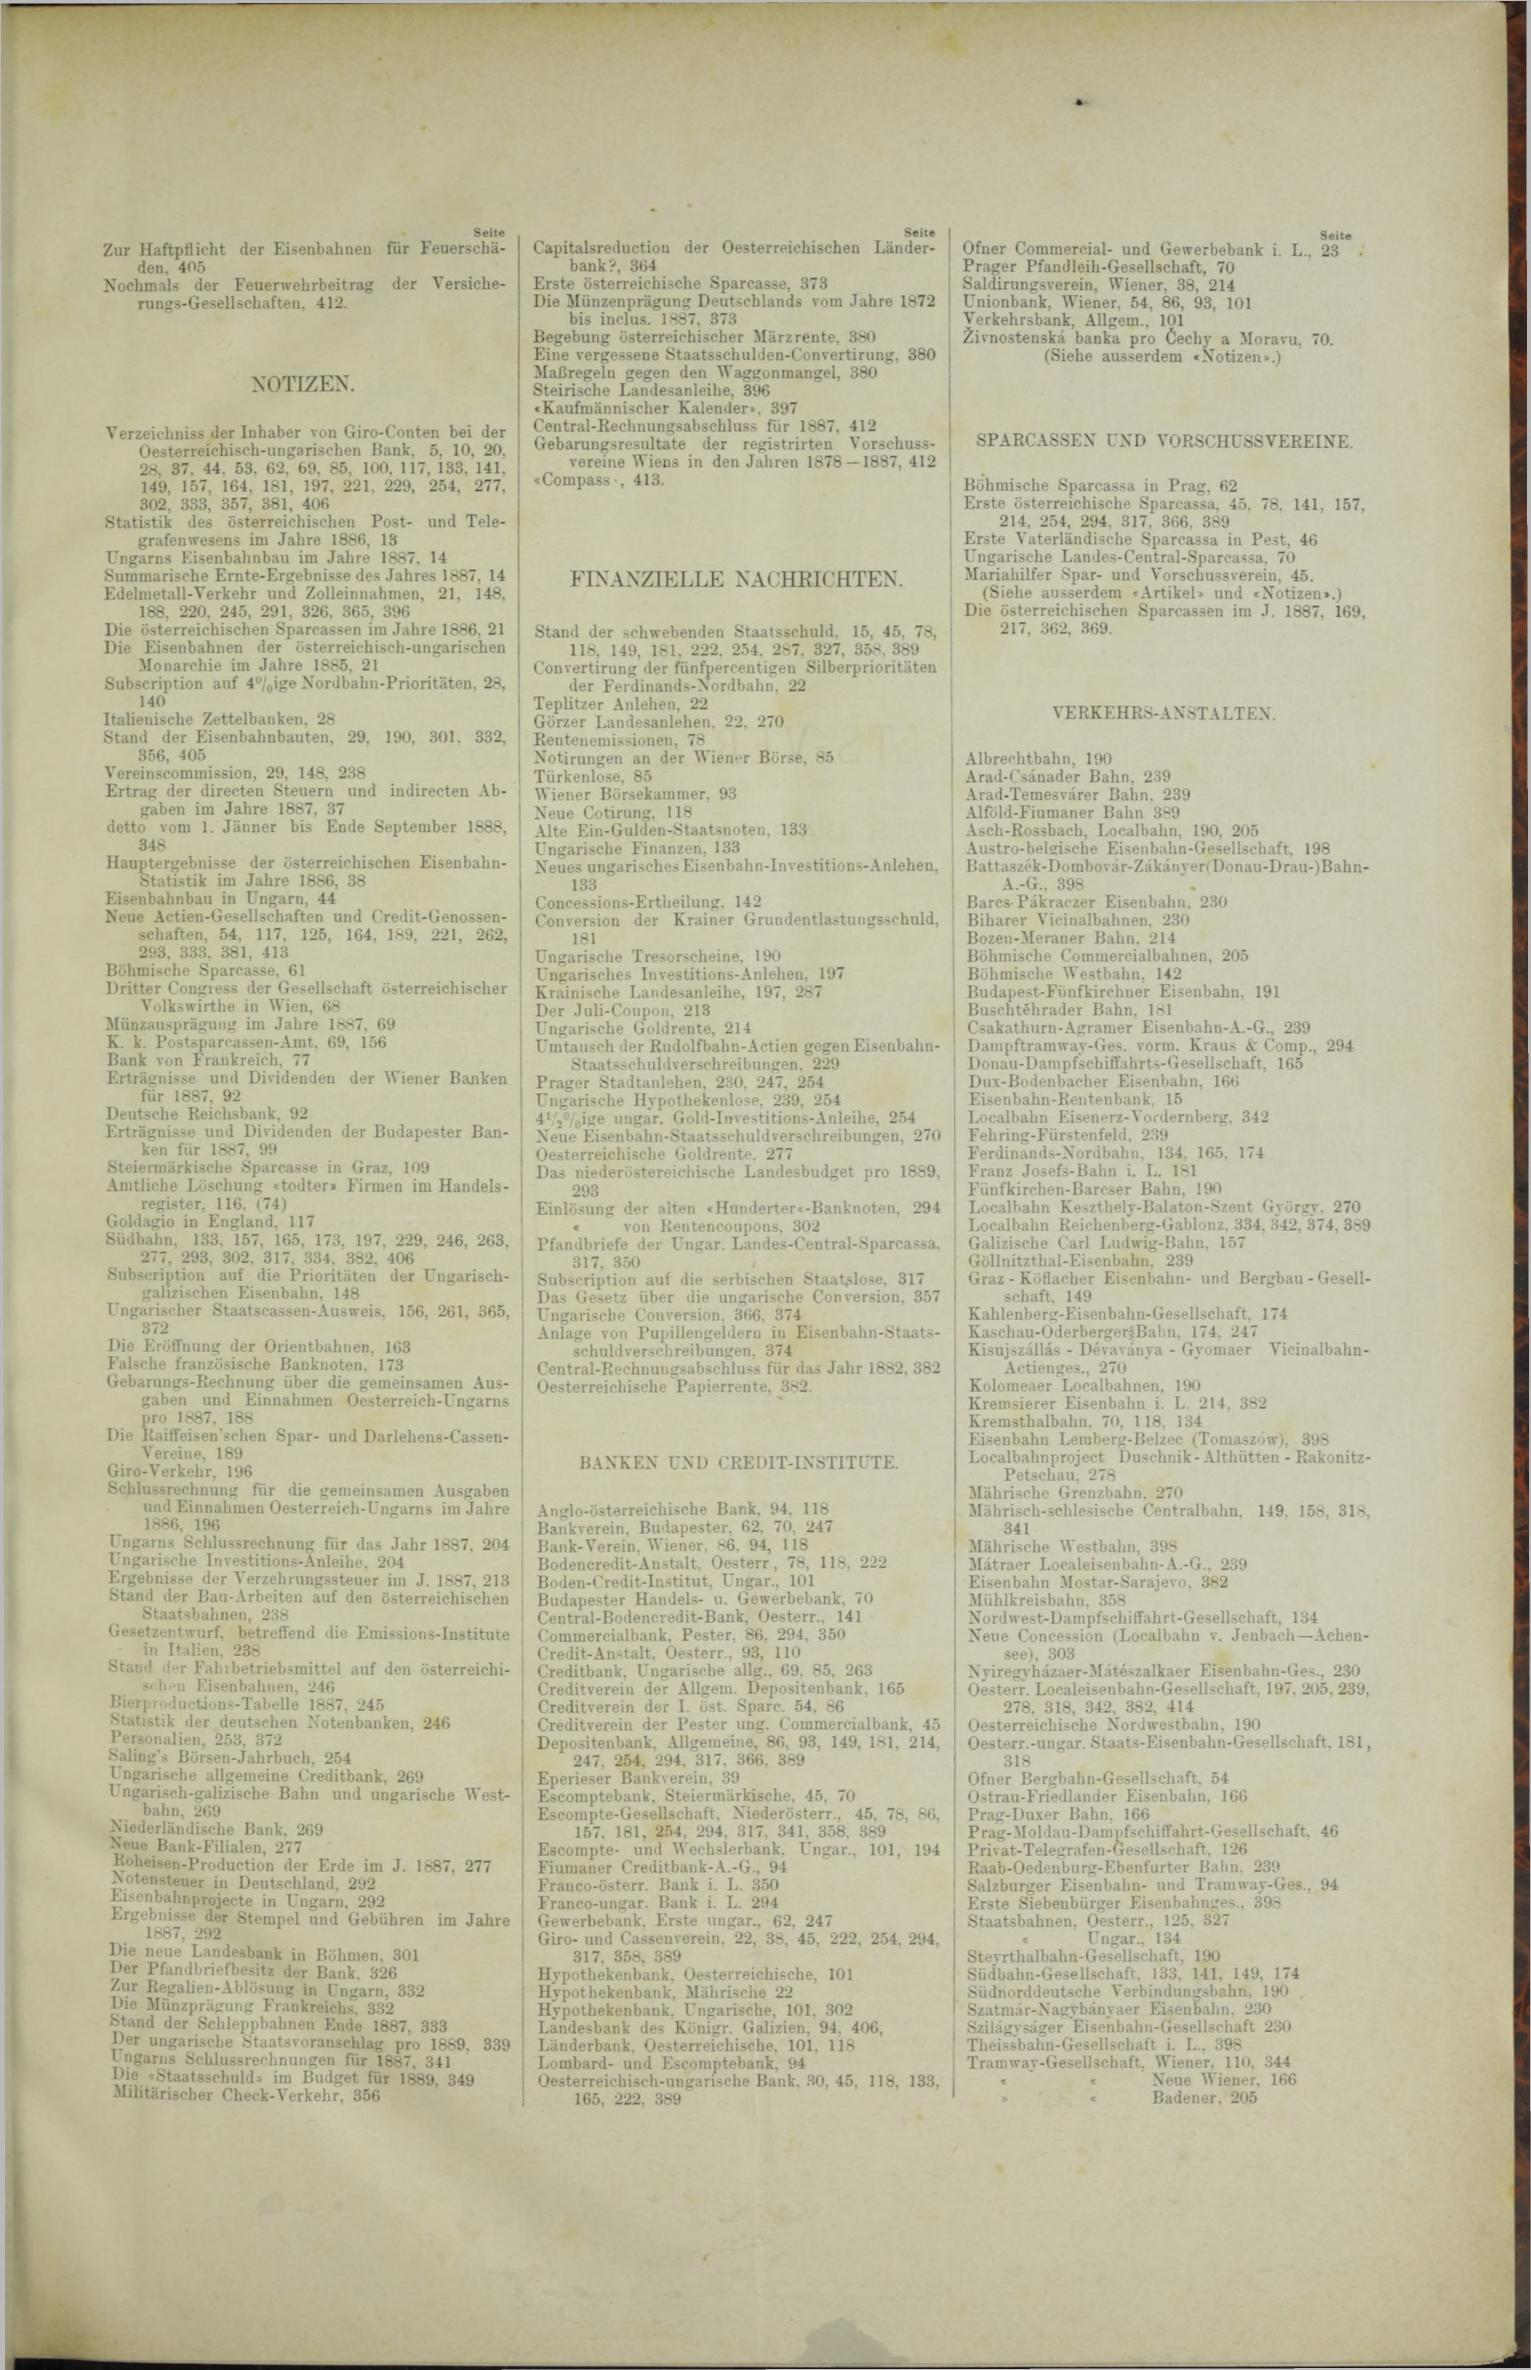 Der Tresor 09.02.1888 - Seite 11